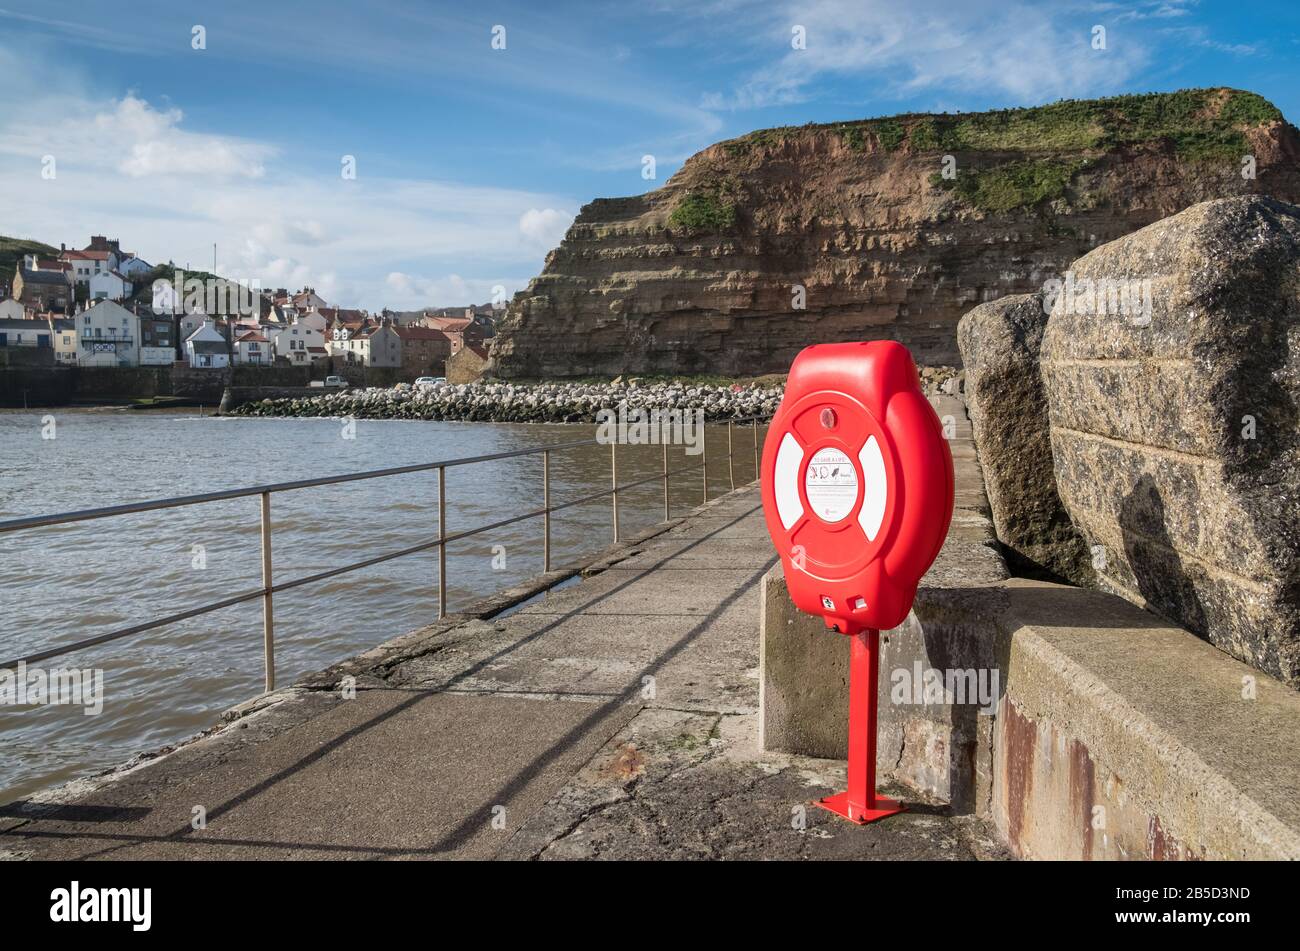 Un anillo de boya de vida para emergencias acuáticas situado en el bonito puerto costero de Staithes, un pintoresco pueblo en la costa de North Yorkshire, Reino Unido Foto de stock